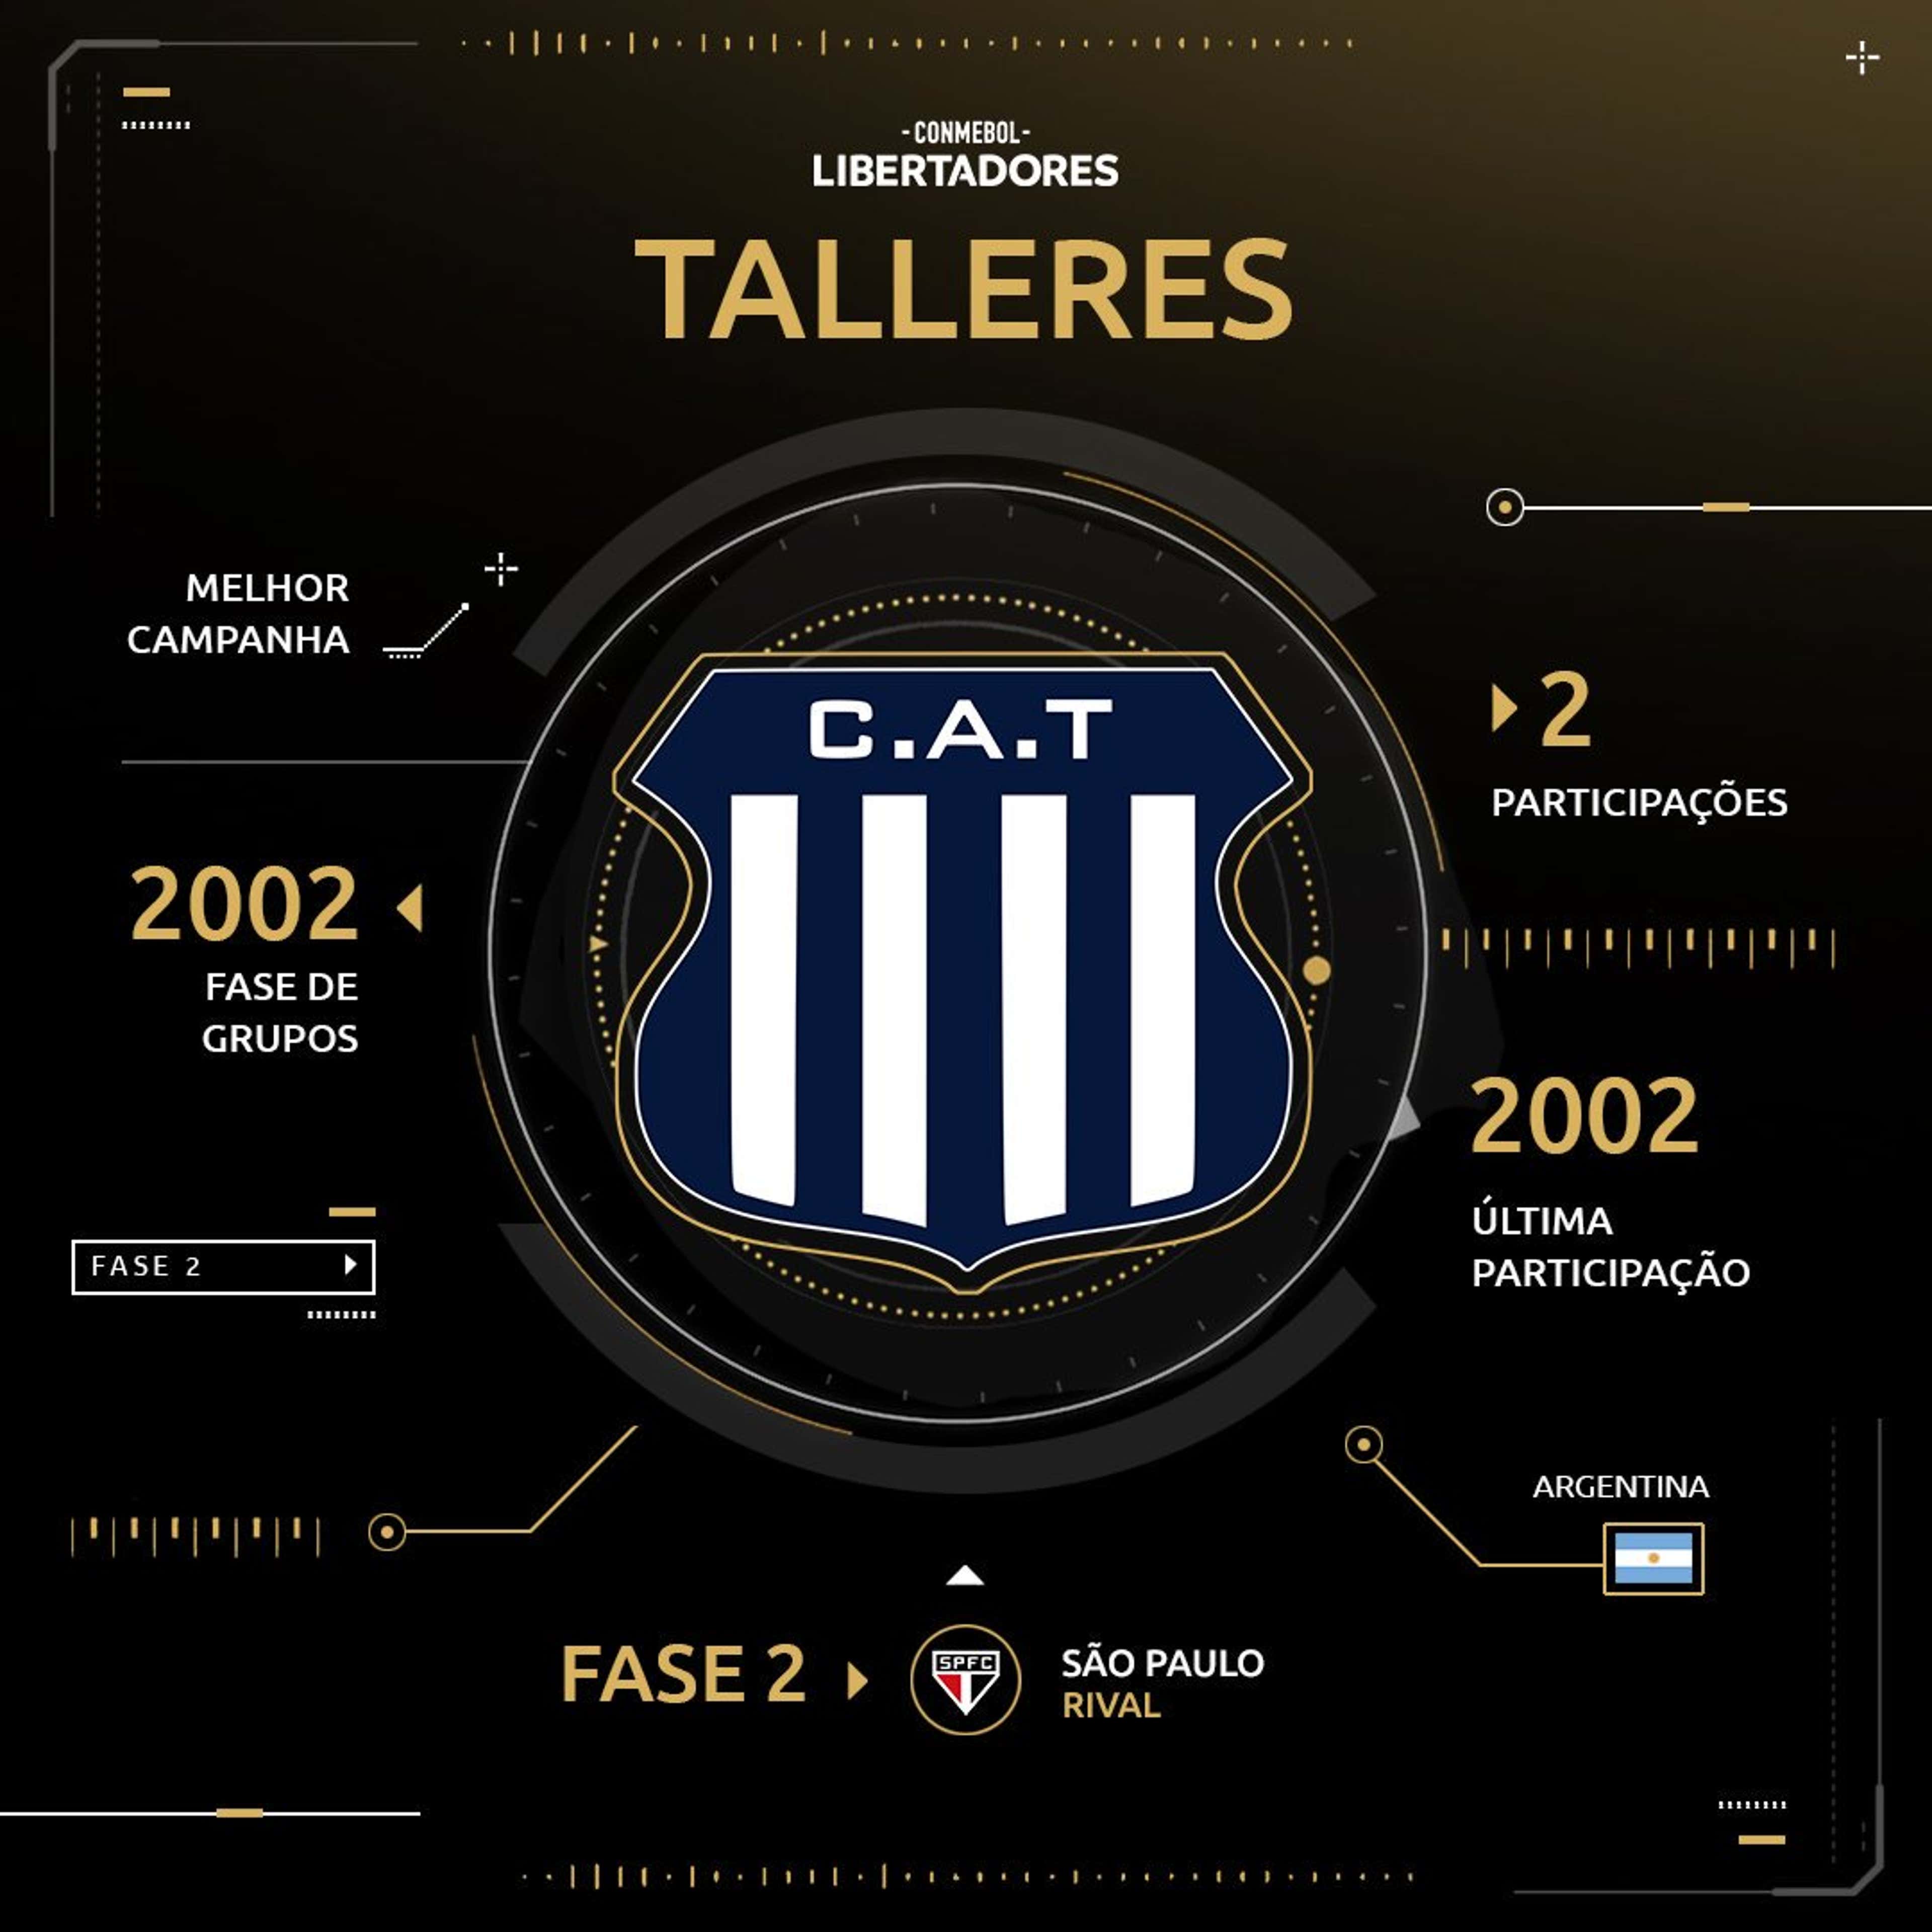 Talleres - Histórico Libertadores - 2019